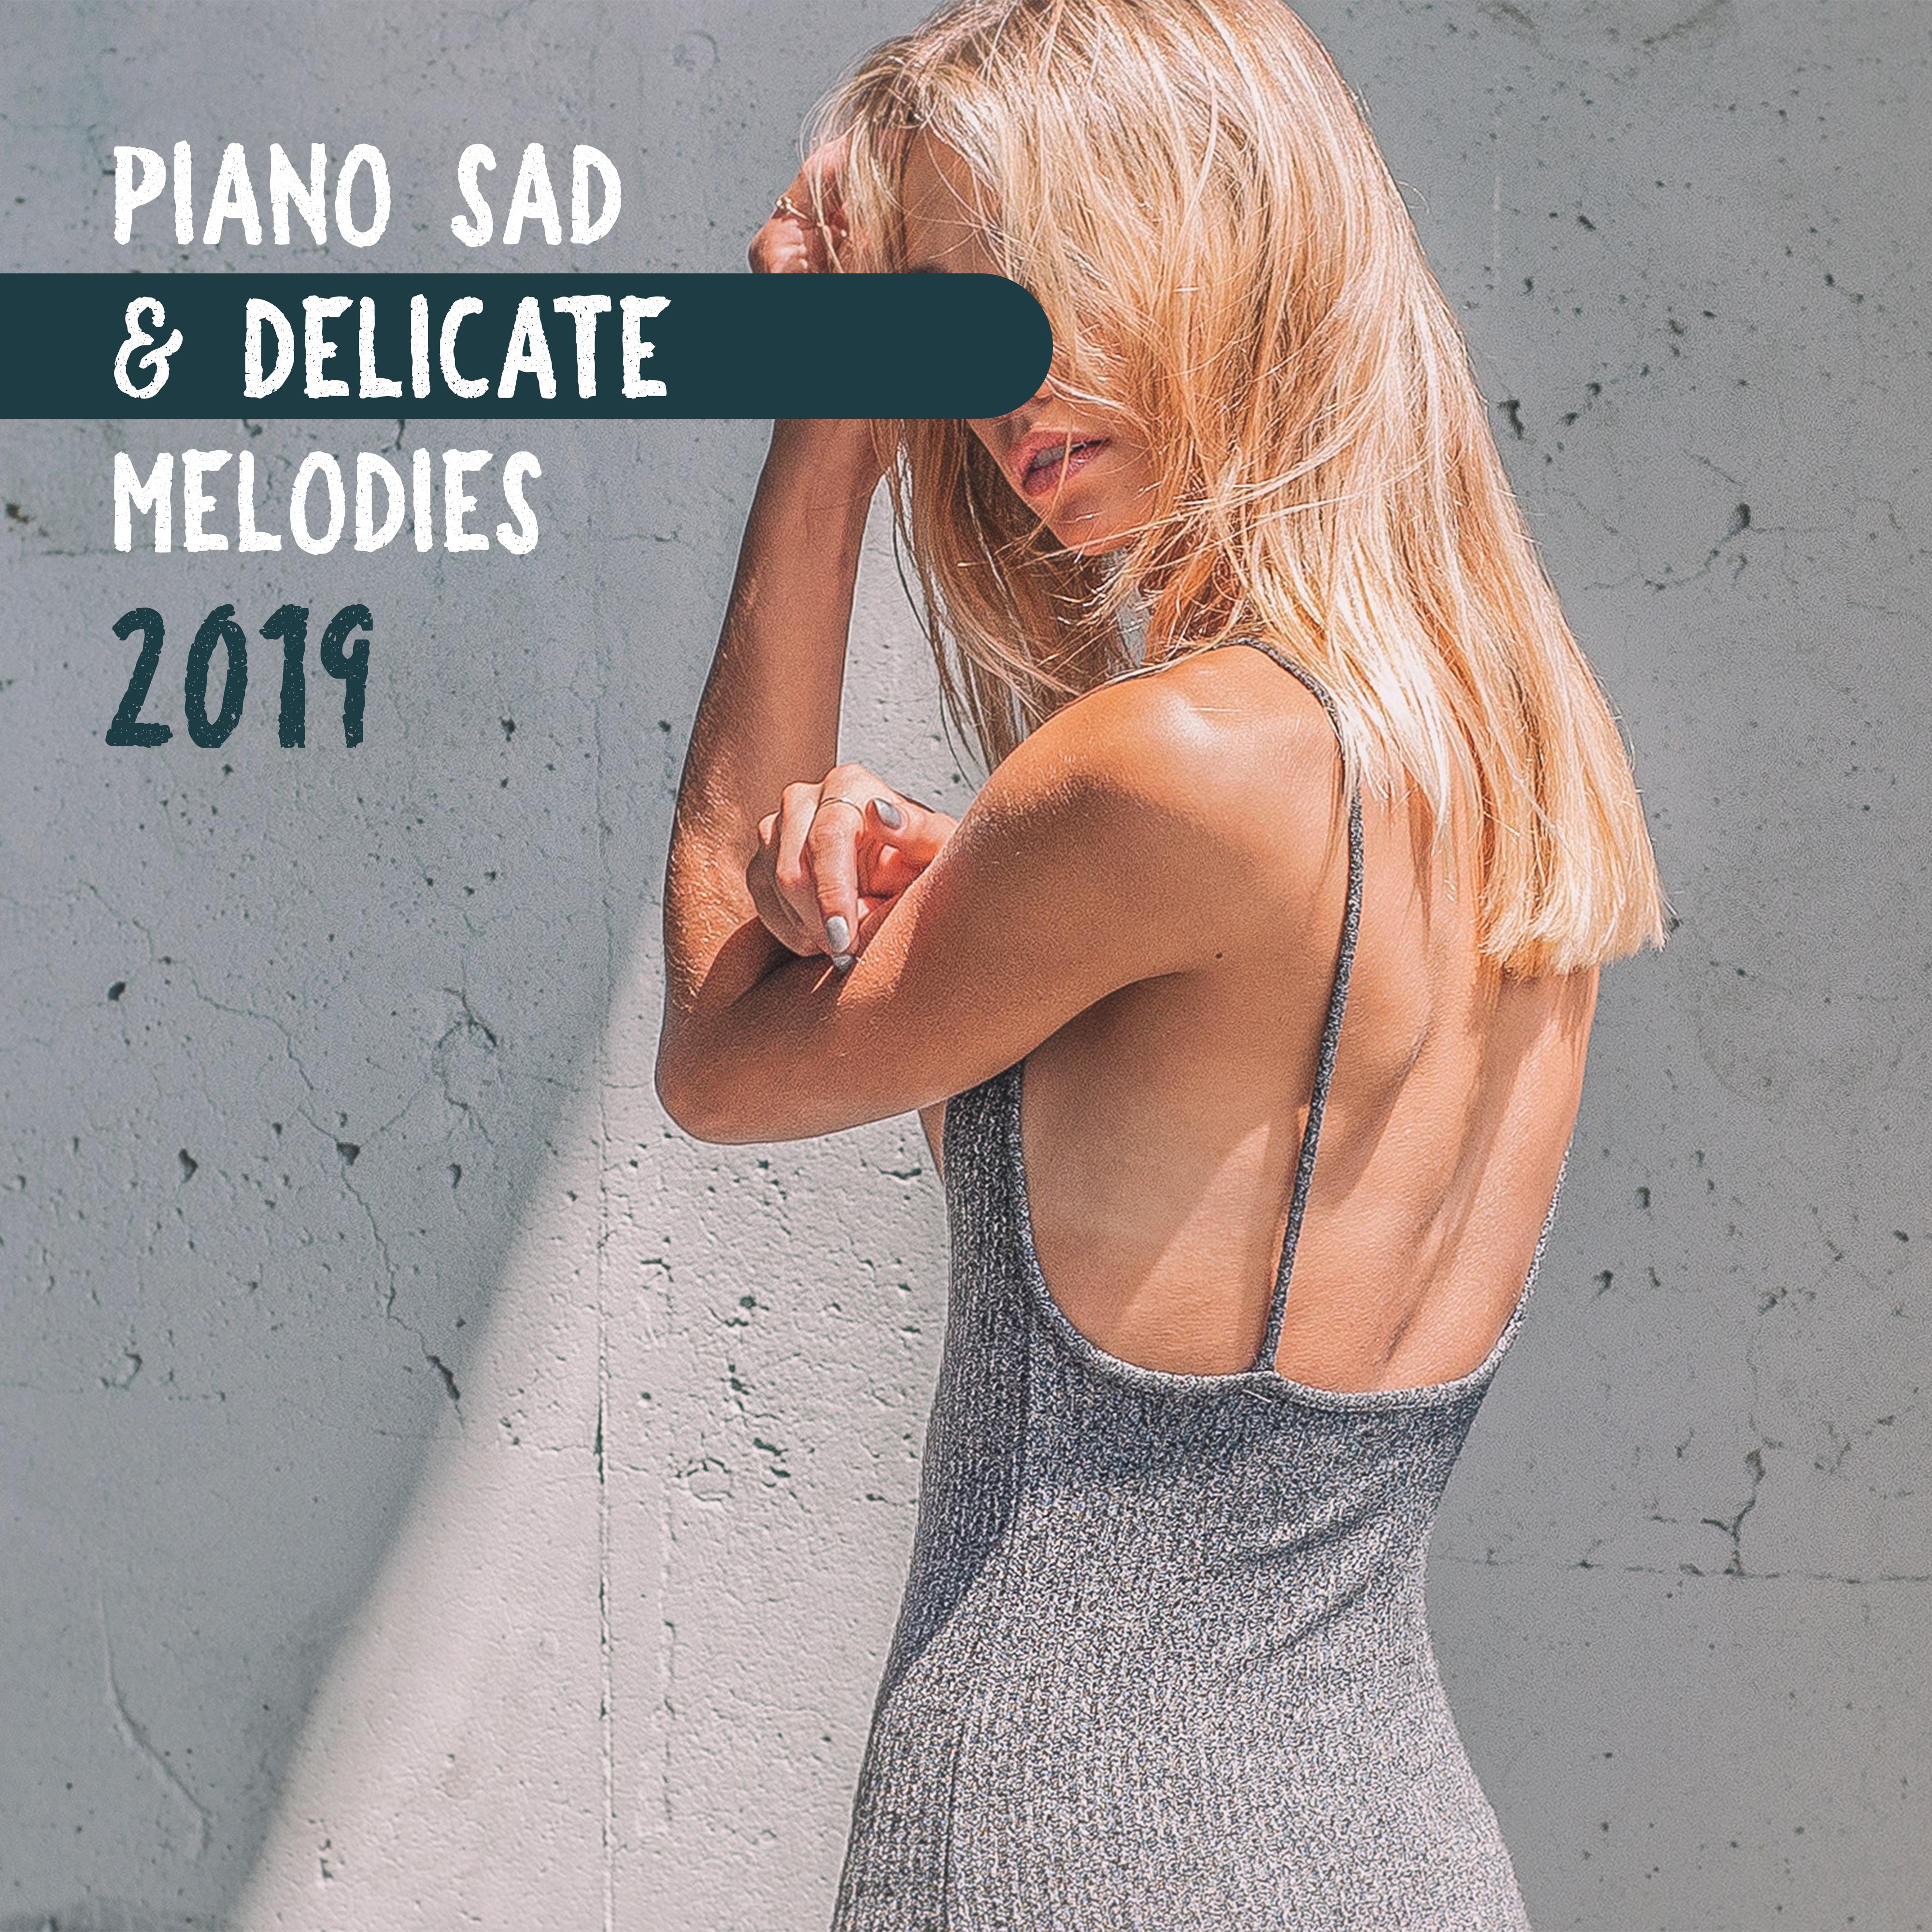 Piano Sad & Delicate Melodies 2019